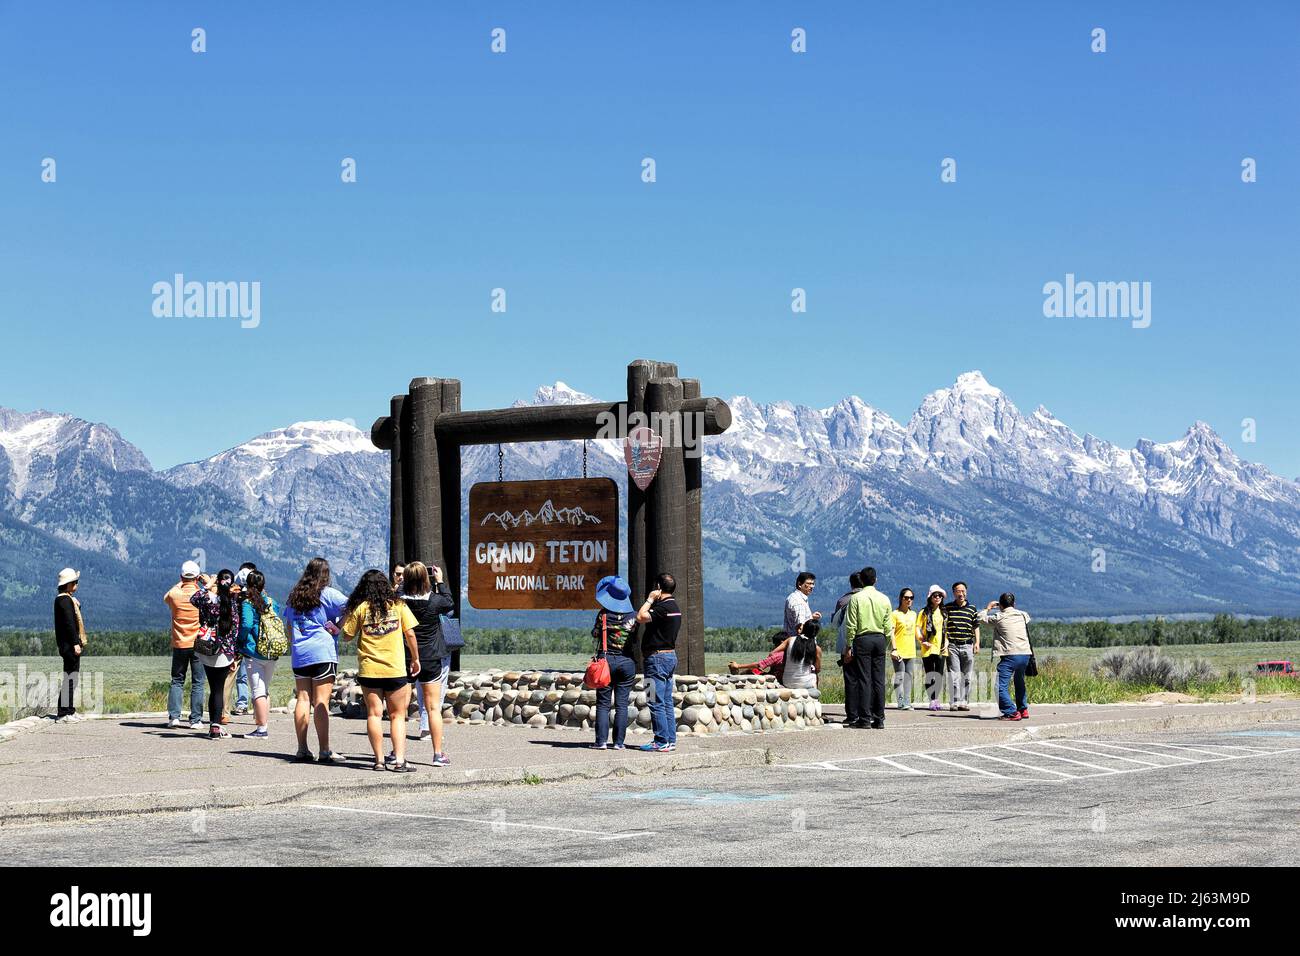 Eine Gruppe asiatischer Touristen, die vor dem Eingangsschild im Grand Teton National Park Fotos machen. Stockfoto